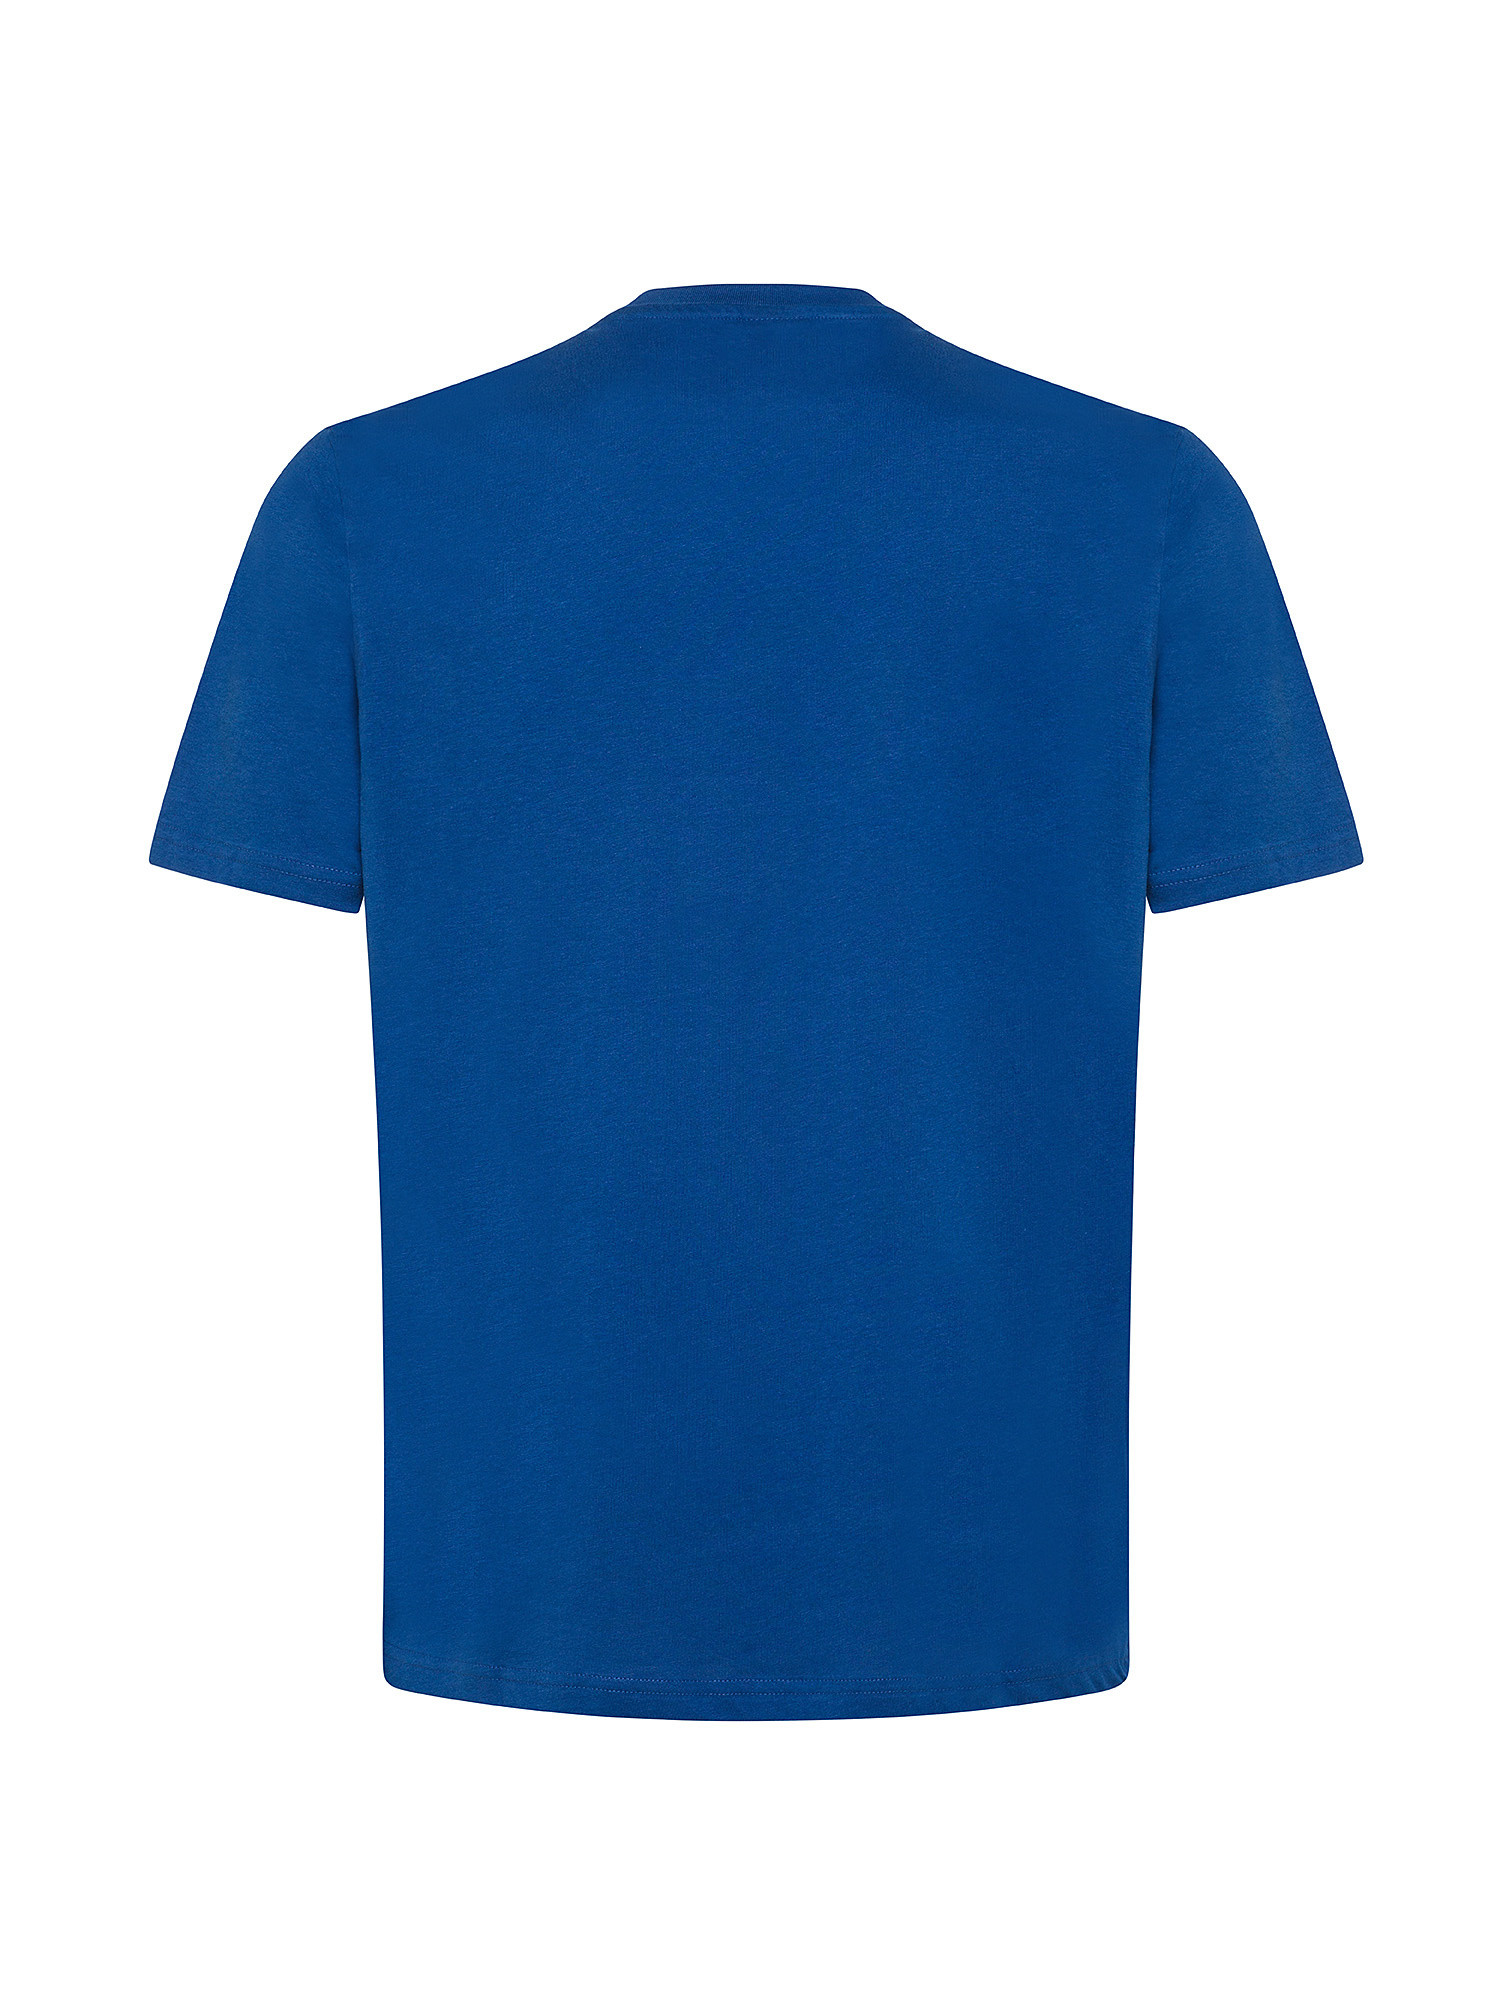 North sails - T-shirt in jersey di cotone organico con maxi logo stampato, Blu elettrico, large image number 1